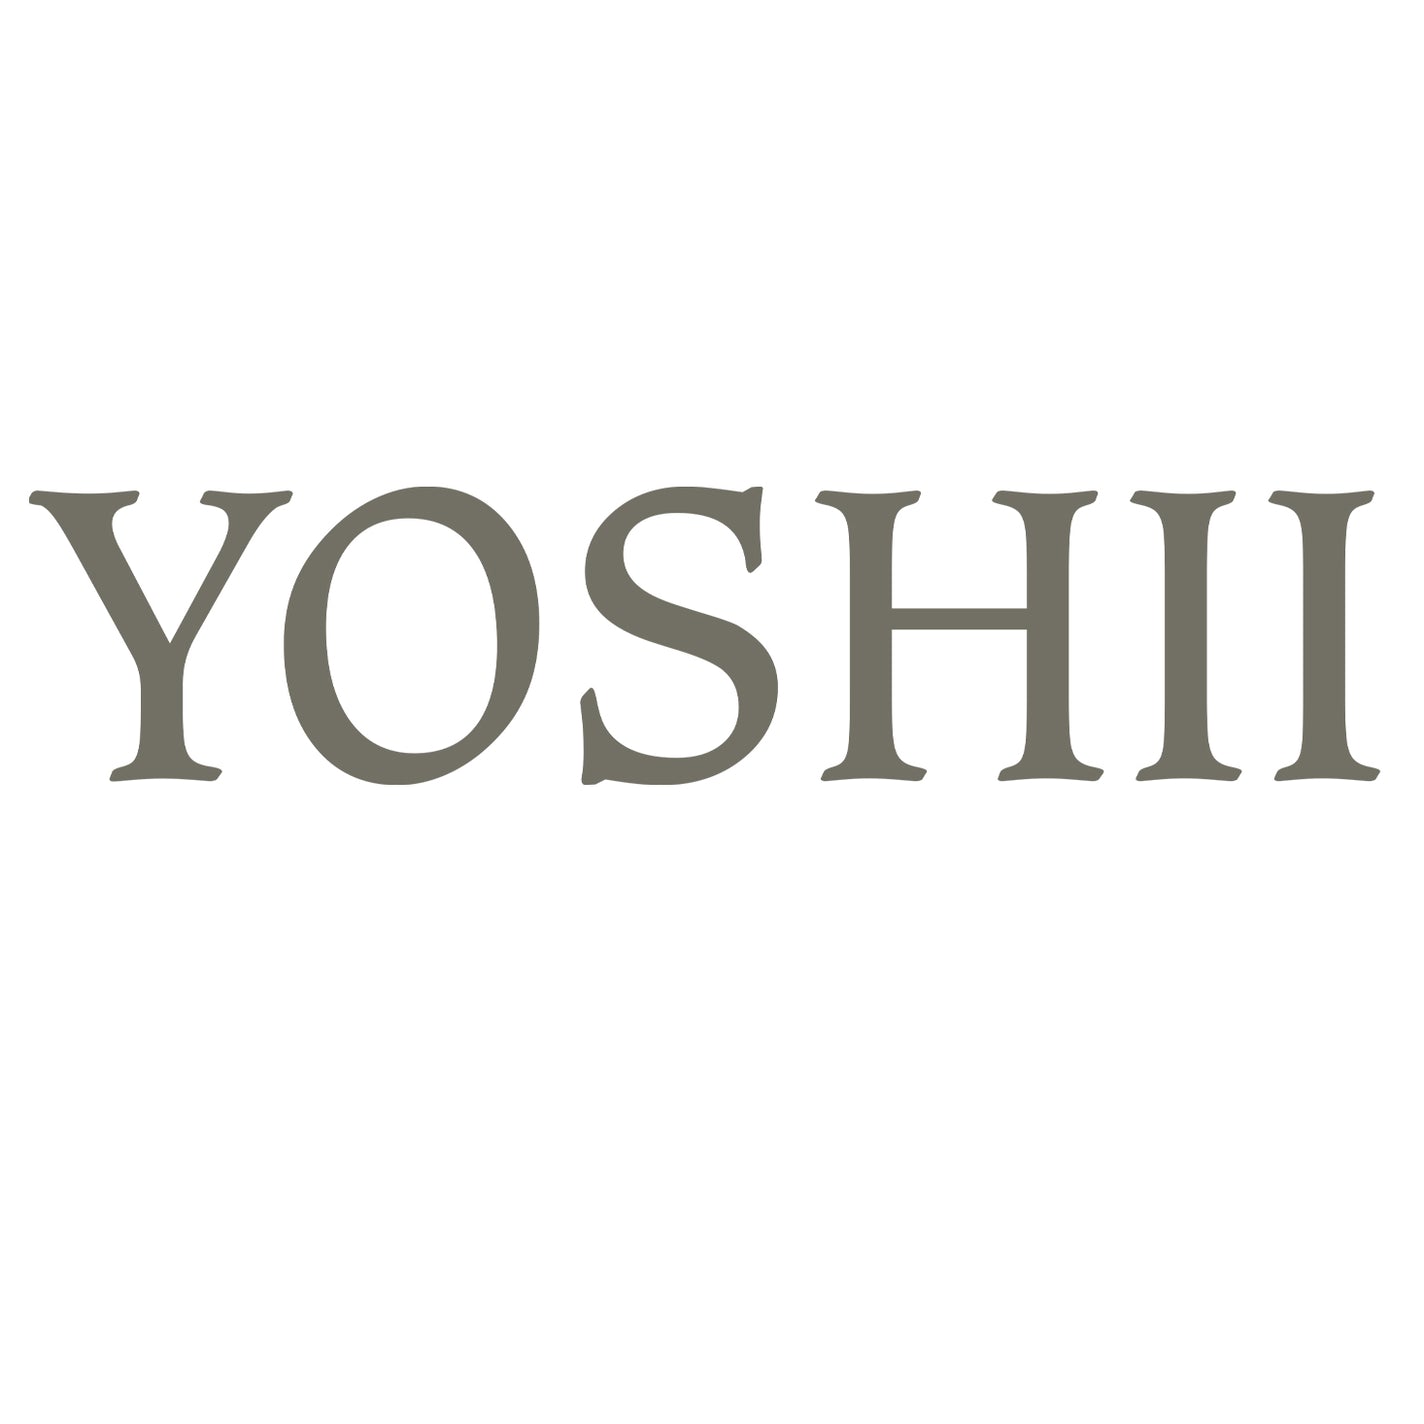 Yoshii Ishikoro 'Pebble' Bath Mat - Black